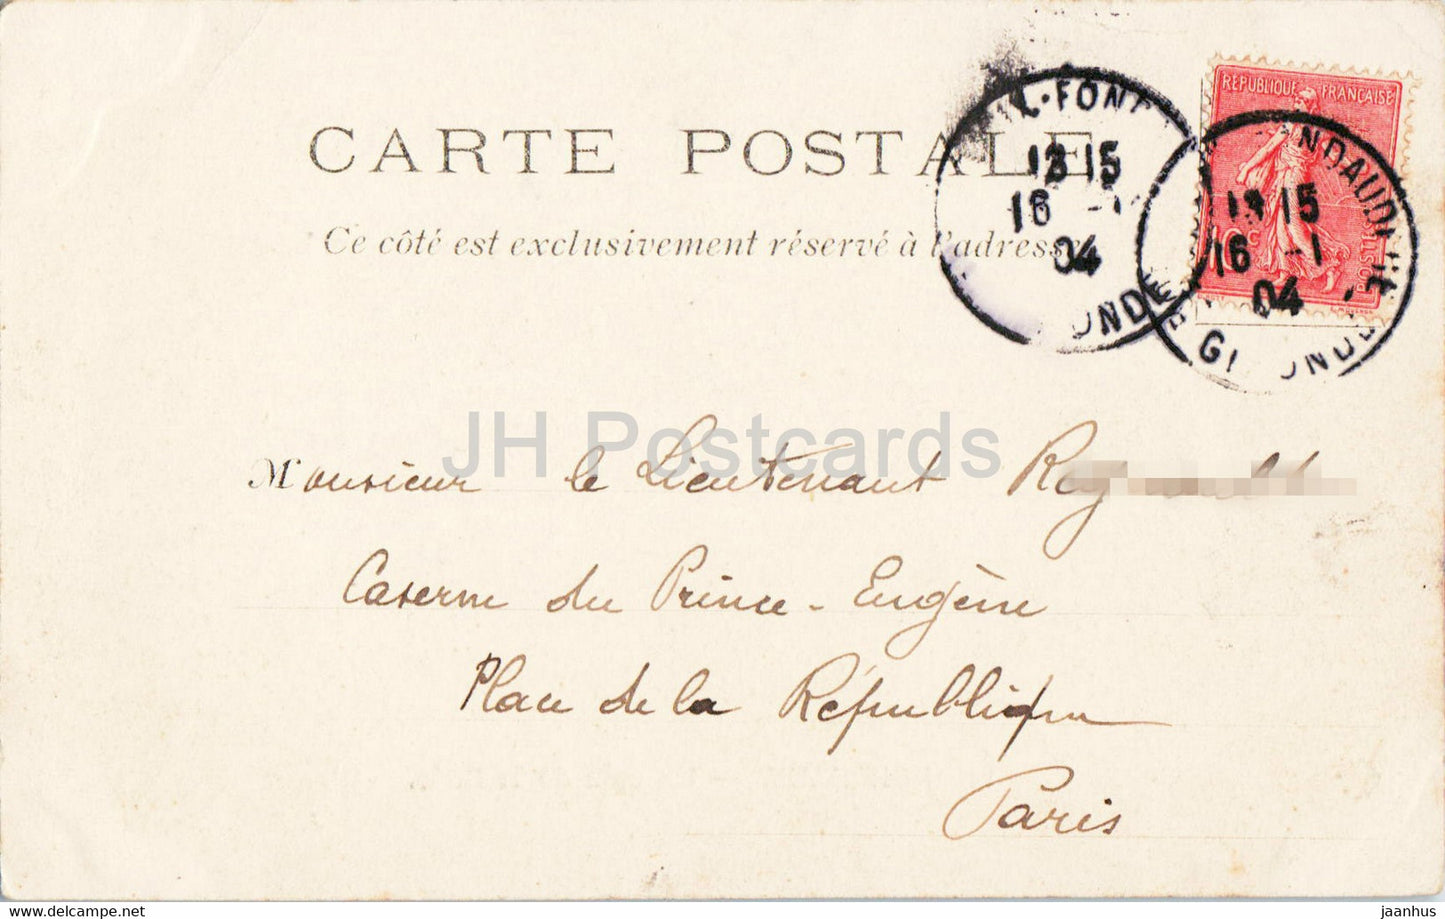 Bordeaux - Un coin de la Rade - voilier - bateau - calèche - 24 - carte postale ancienne - 1904 - France - occasion